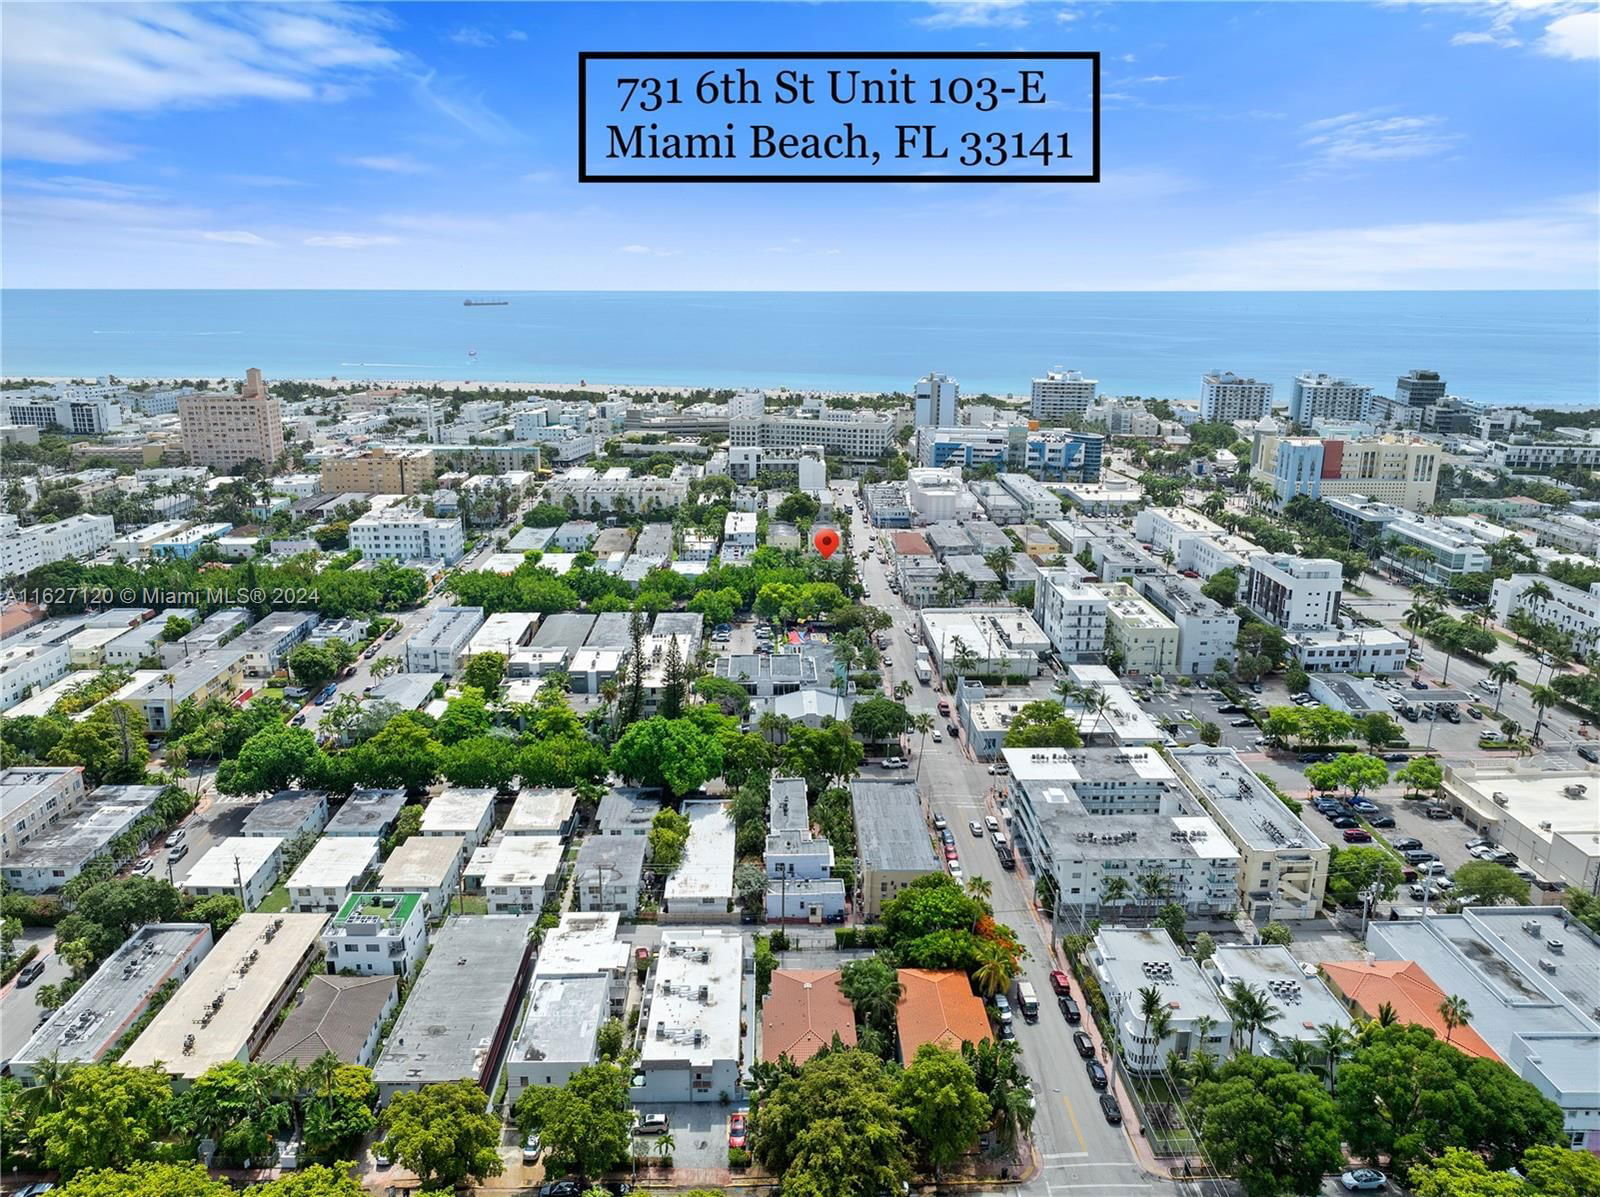 Real estate property located at 731 6th St # 103-E, Miami-Dade County, MOULIN ROUGE CONDO, Miami Beach, FL